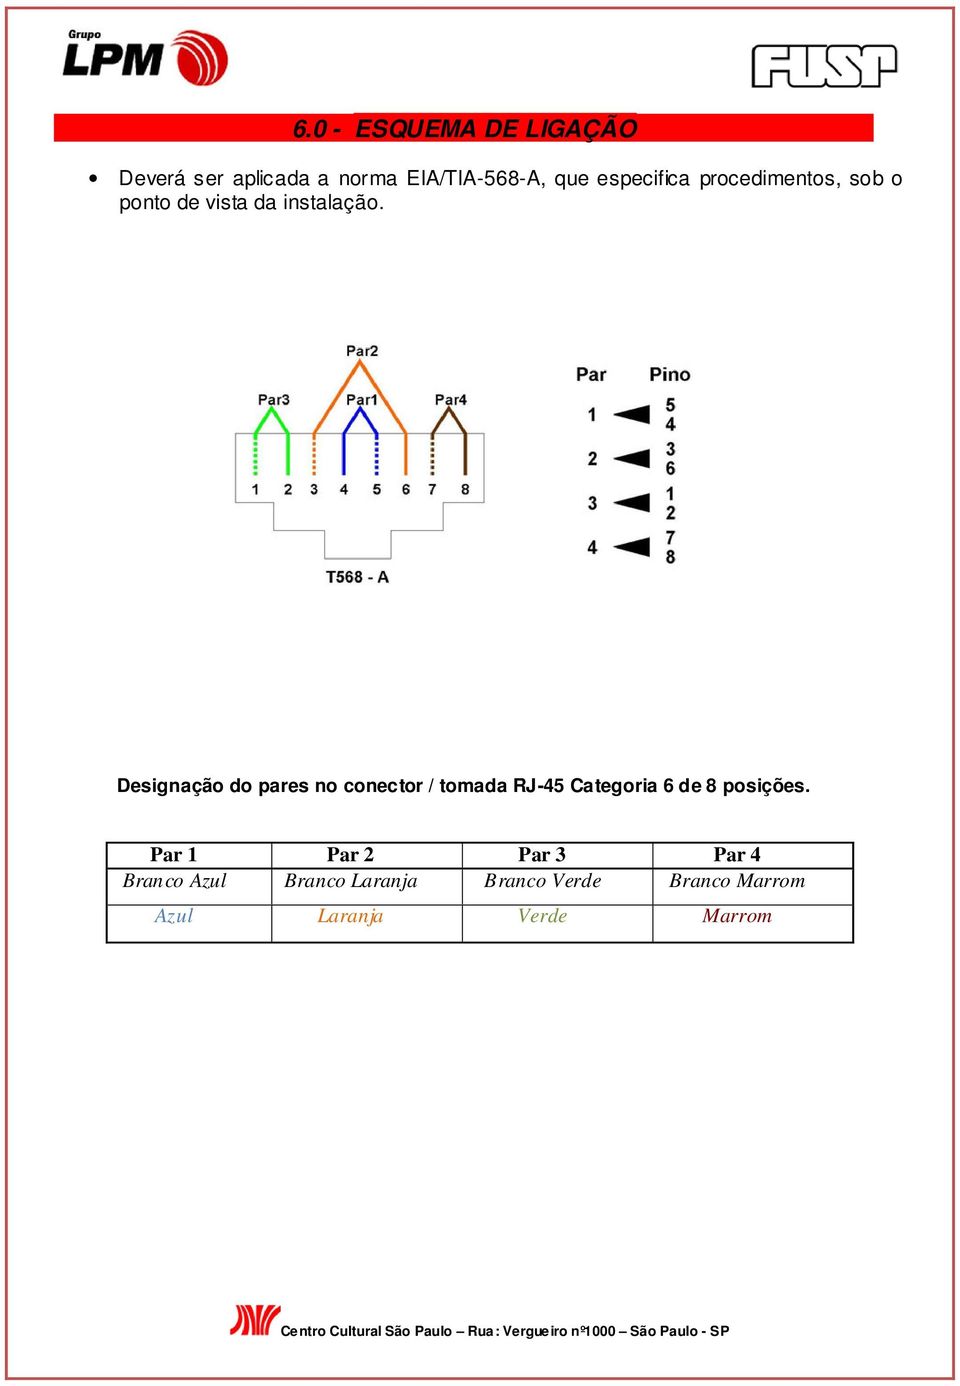 Designação do pares no conector / tomada RJ-45 Categoria 6 de 8 posições.